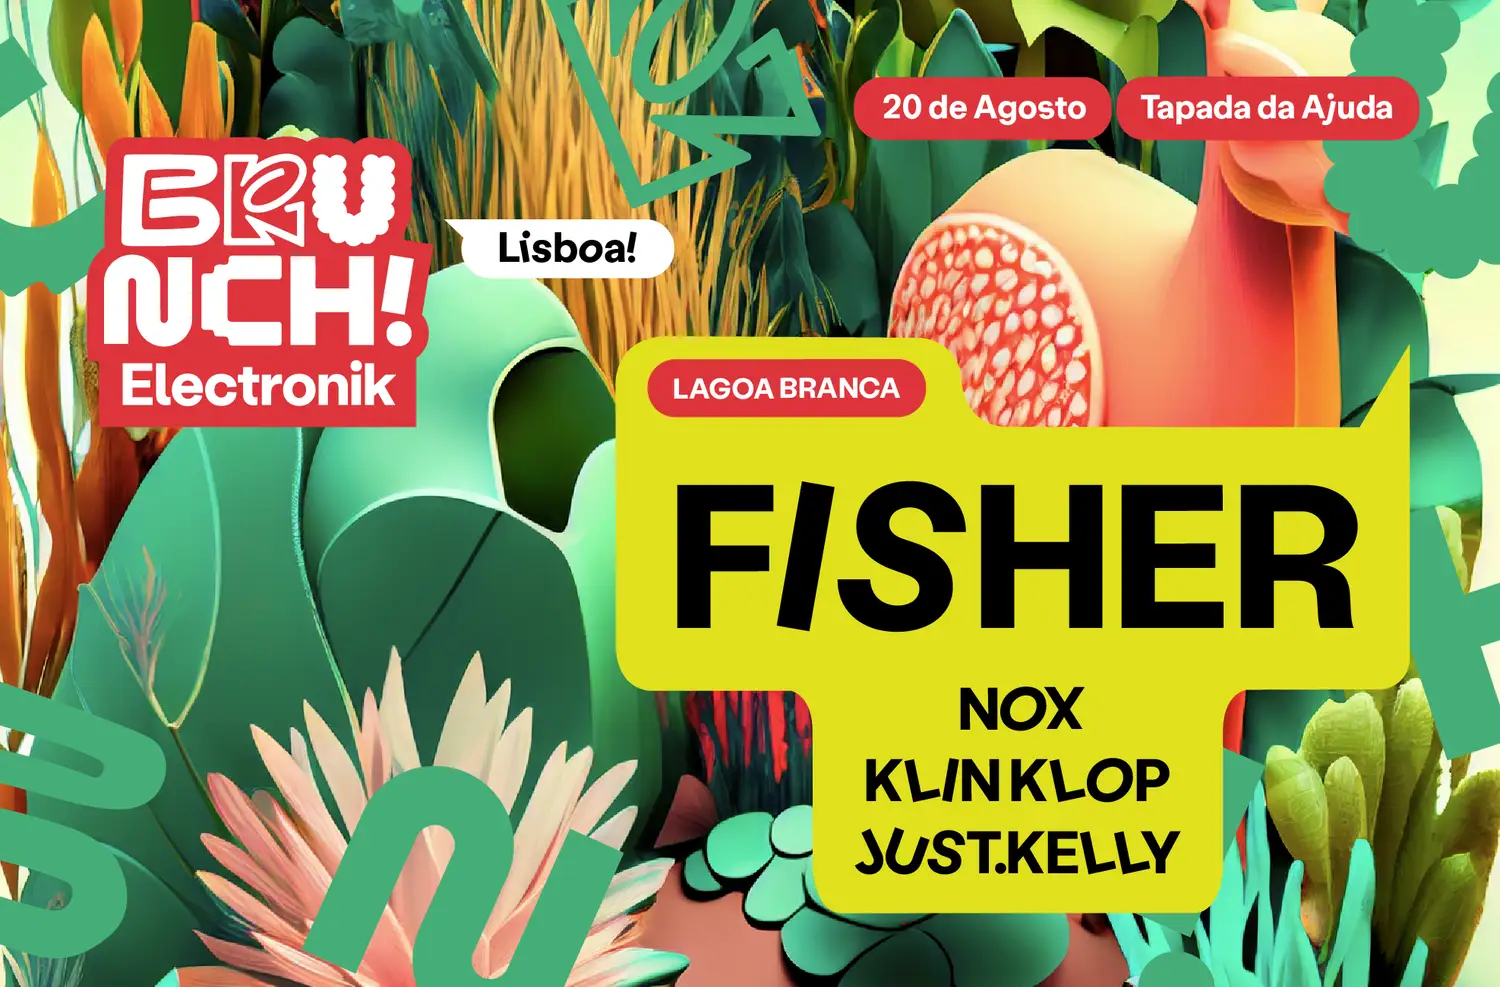 Brunch Electronik Lisboa #4: Fisher, Nox, Klin Klop, Just.Kelly